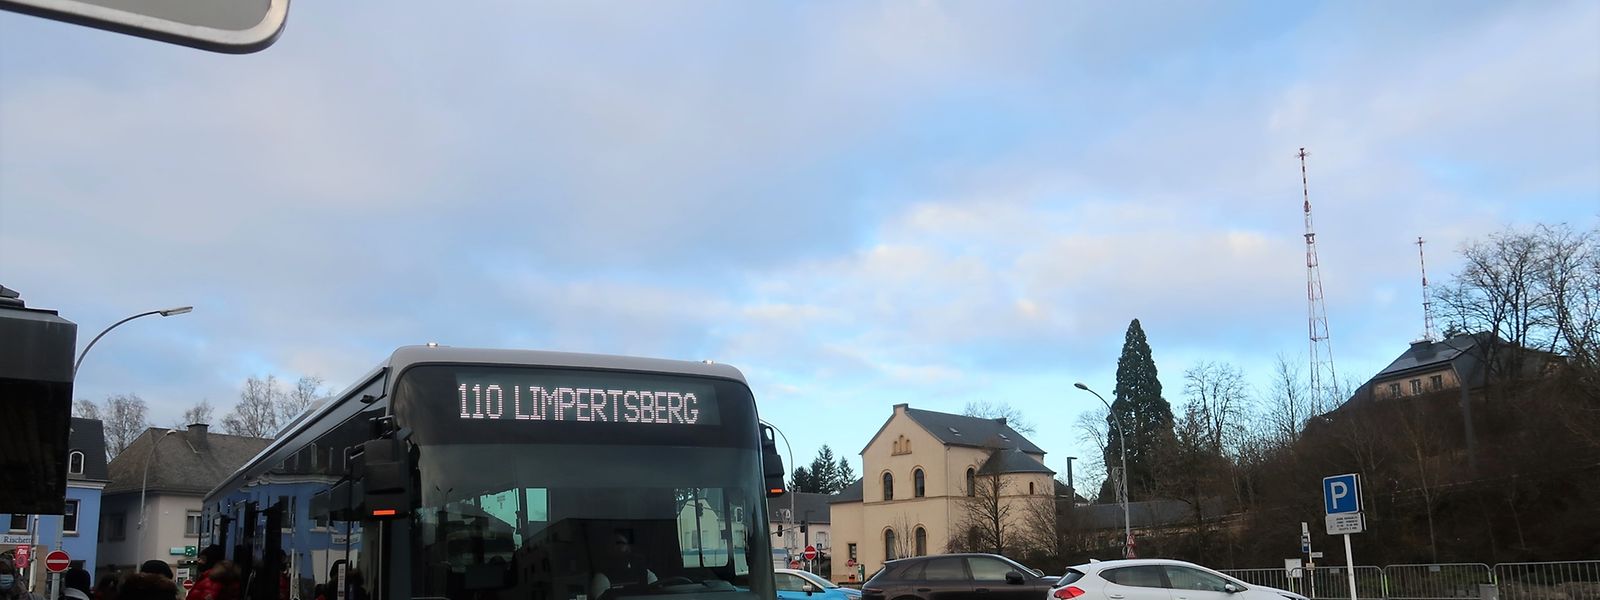 Les lignes de bus 110 et 111, qui relient Echternach à Luxembourg-Ville (sur la photo, la gare routière de Junglinster), vont depuis décembre jusqu'à l'arrêt "Theater" au Limpertsberg.